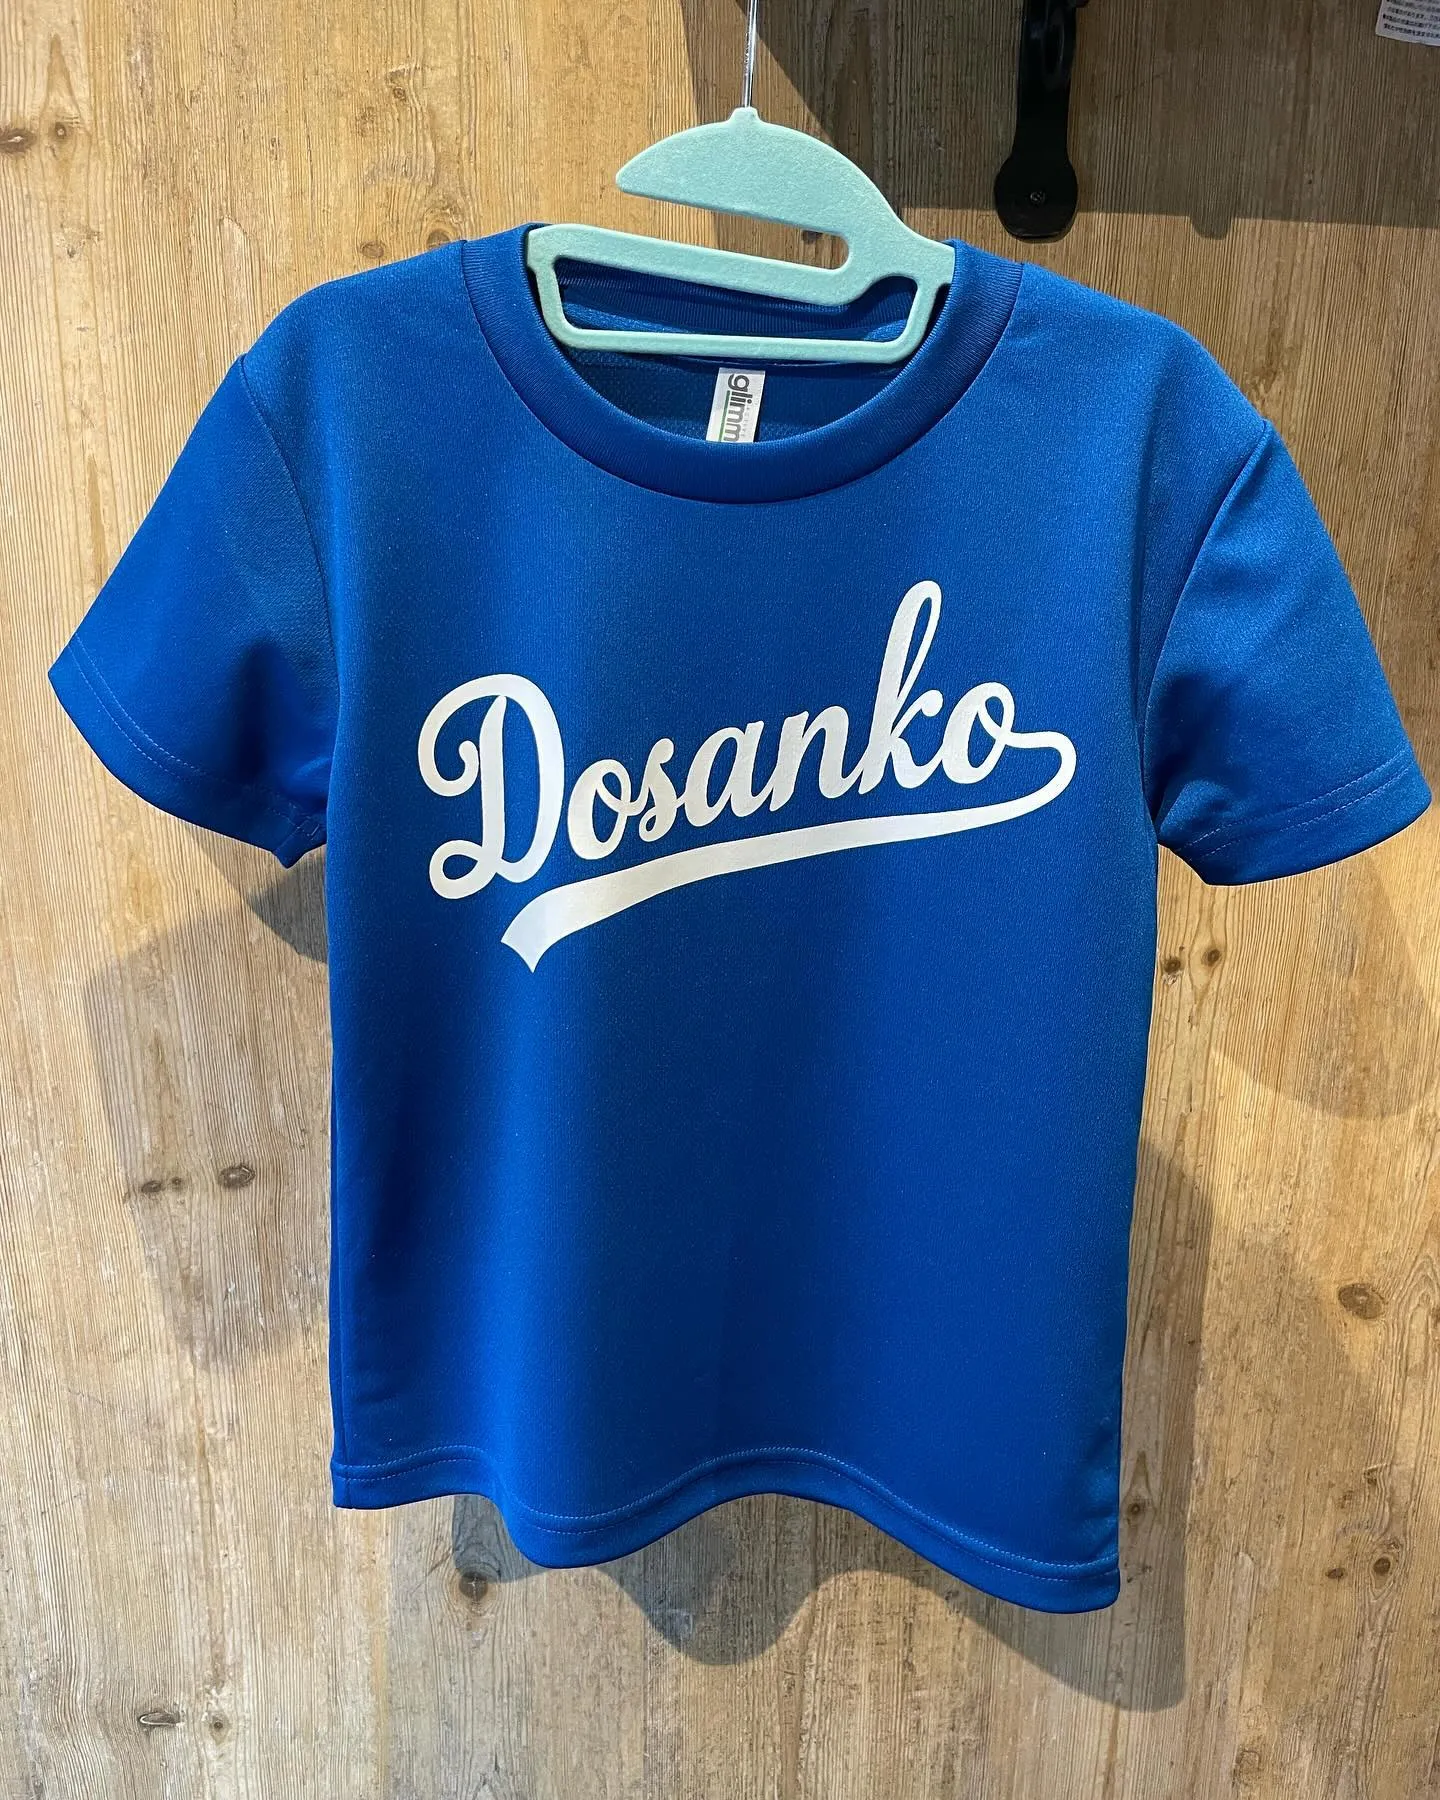 Dosanko（どさんこ）Tシャツ・パーカー作ってみました！...